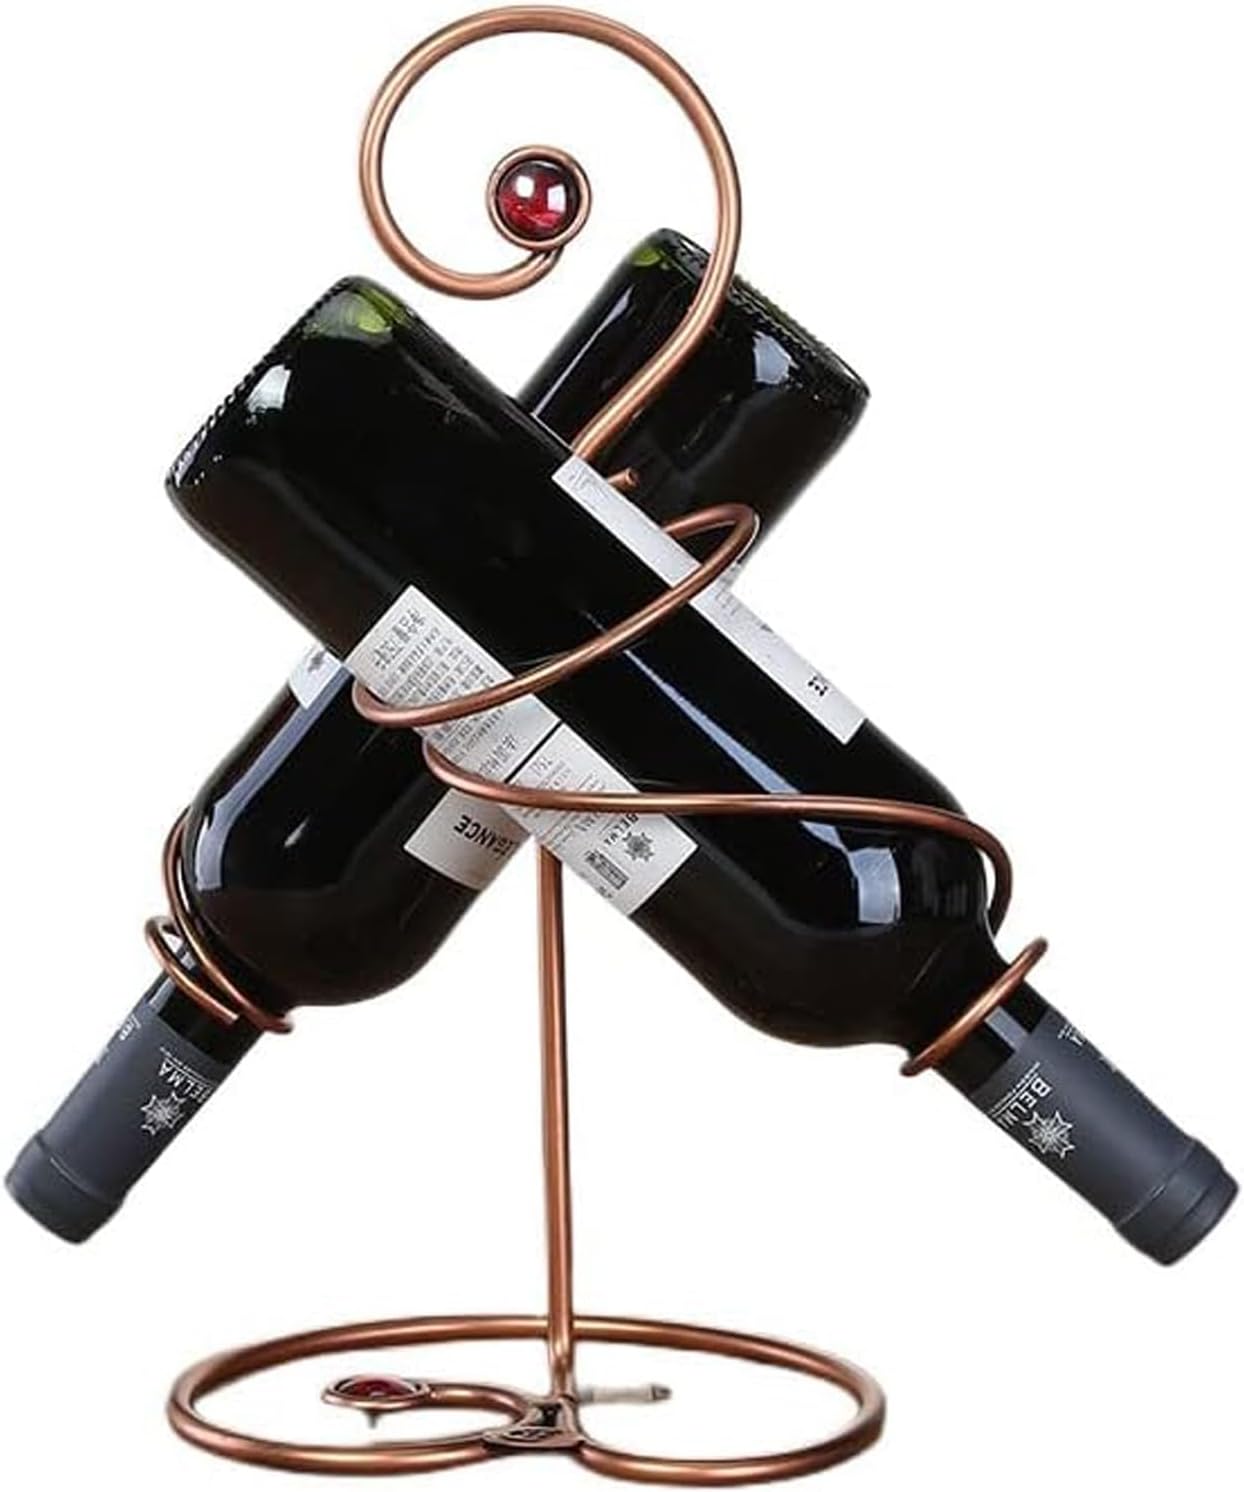 ワインスタンド 金属製 ワイン収納用品 ワインボトルホルダー ワインラック ワイン棚 シック ワインボトルホルダー シャンパンホルダー ワインストレージ 家飾り